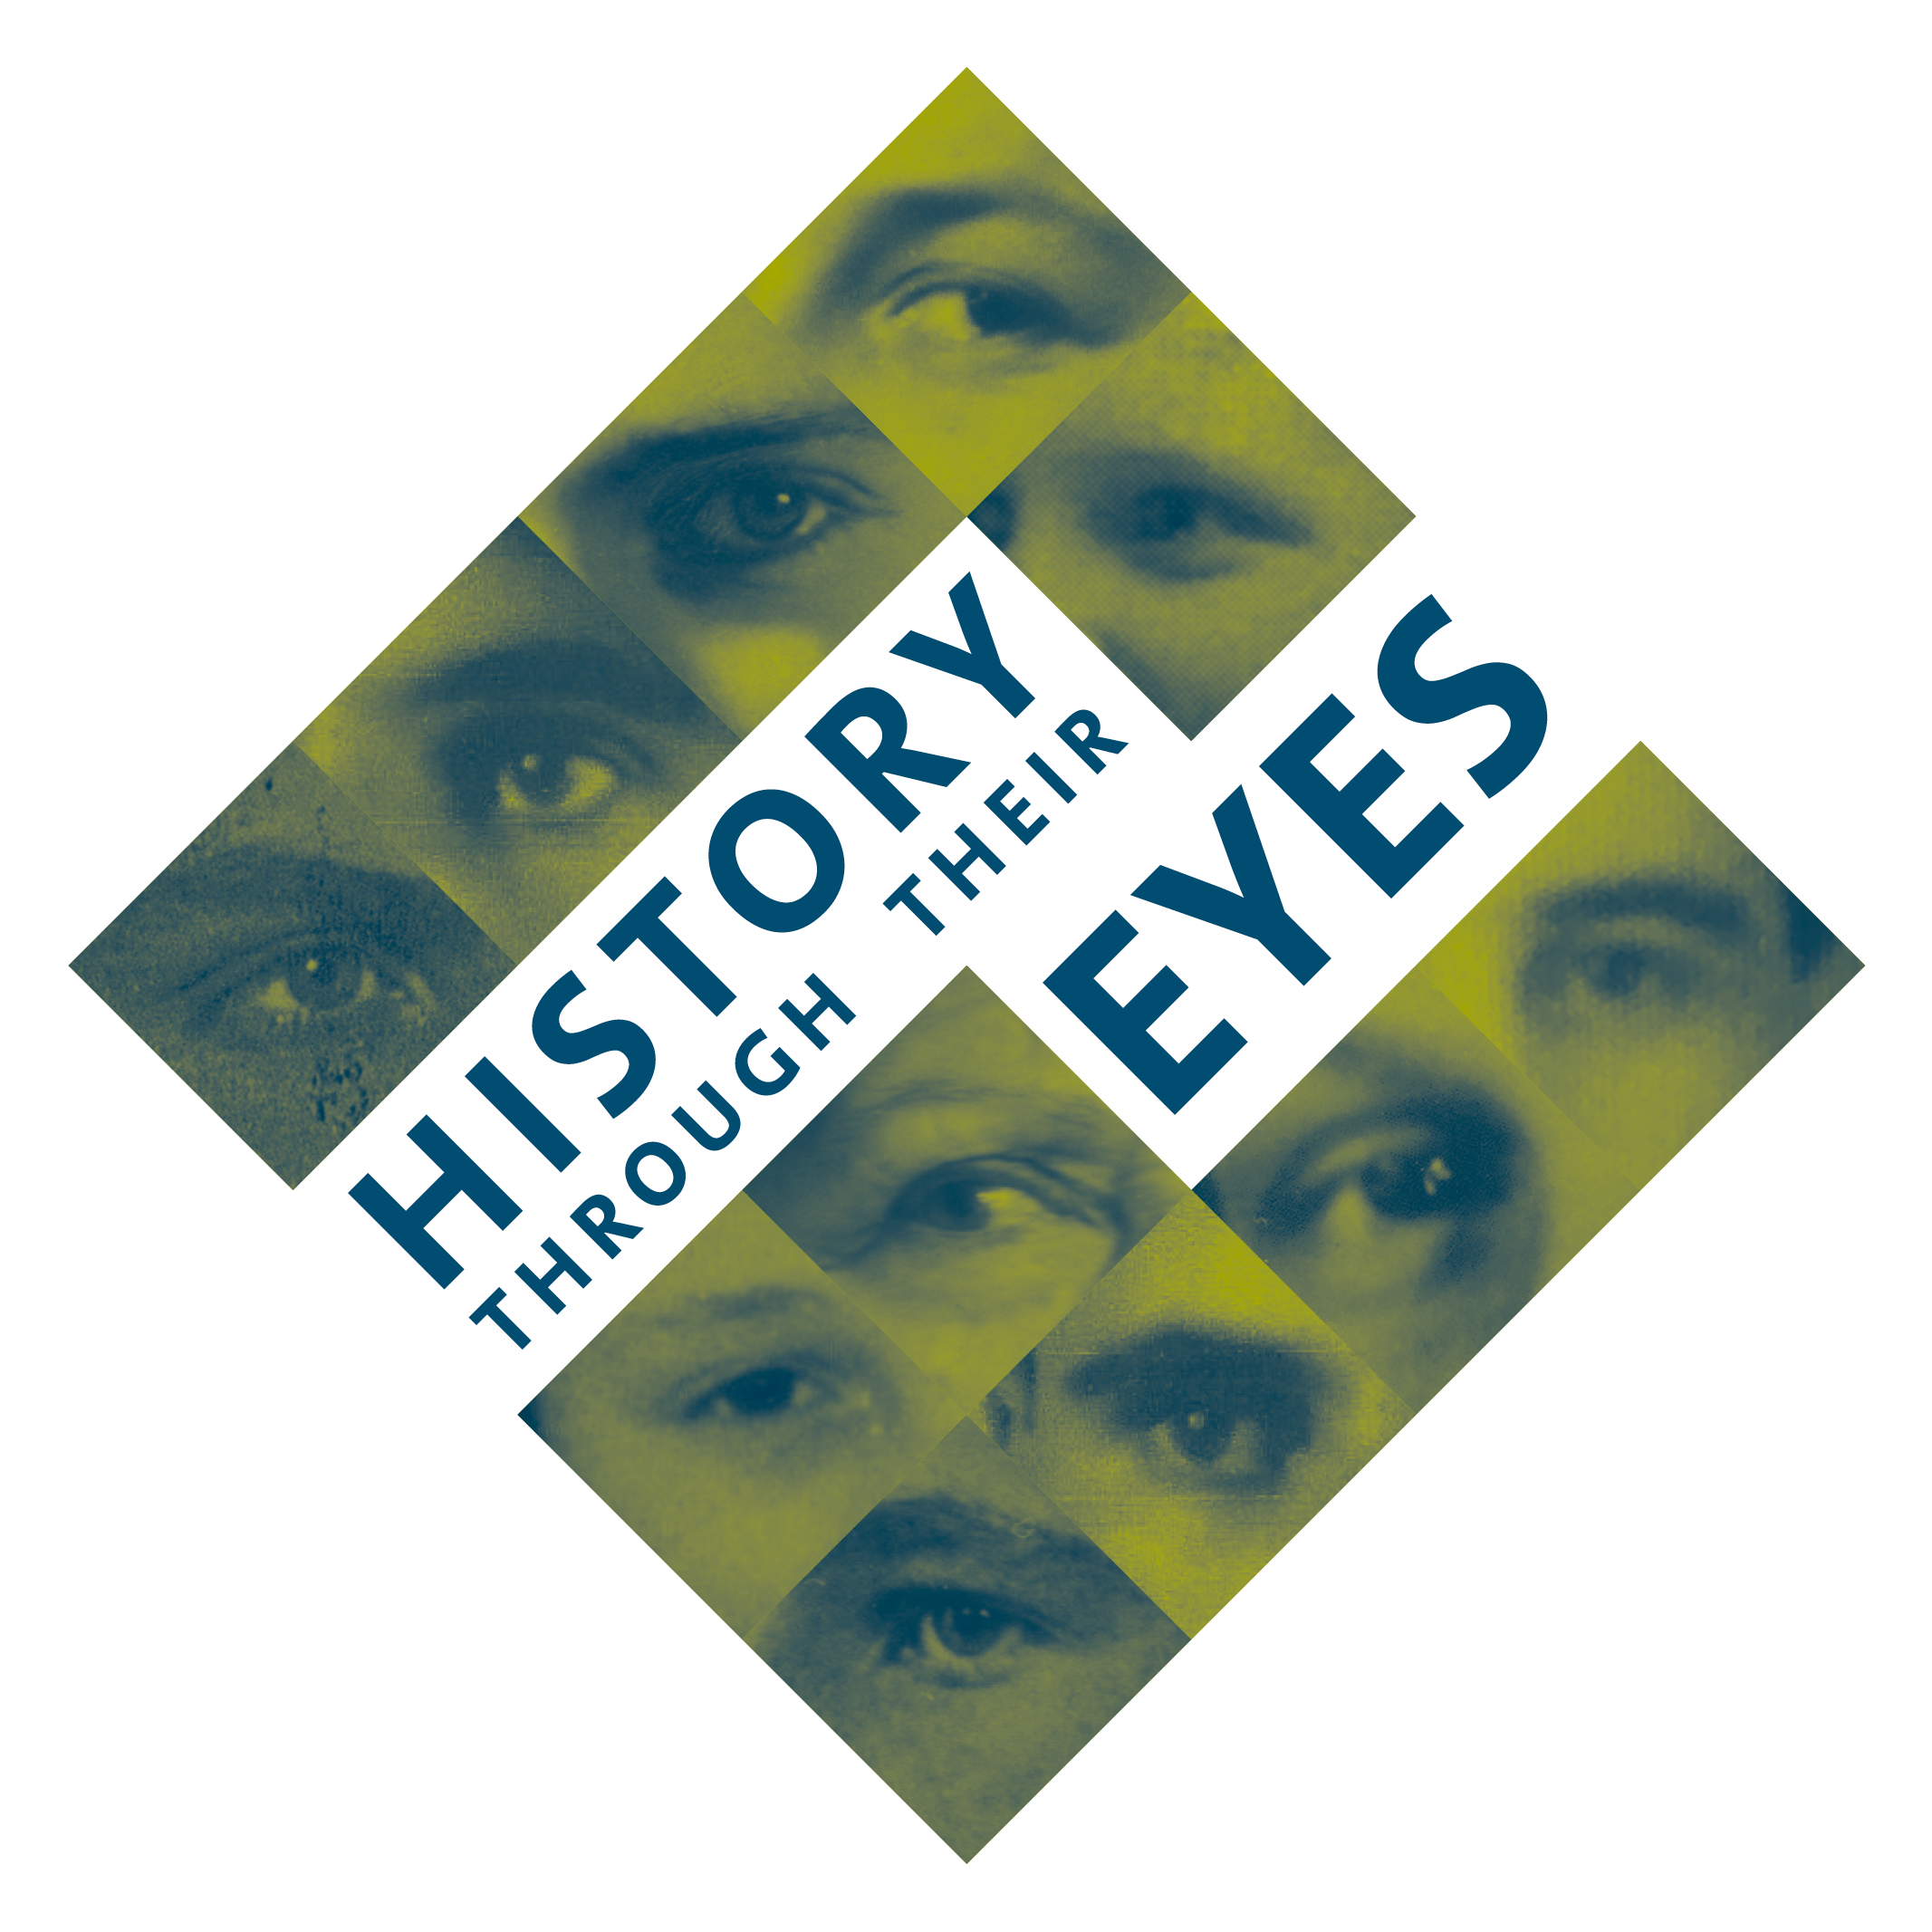 History through their eyes